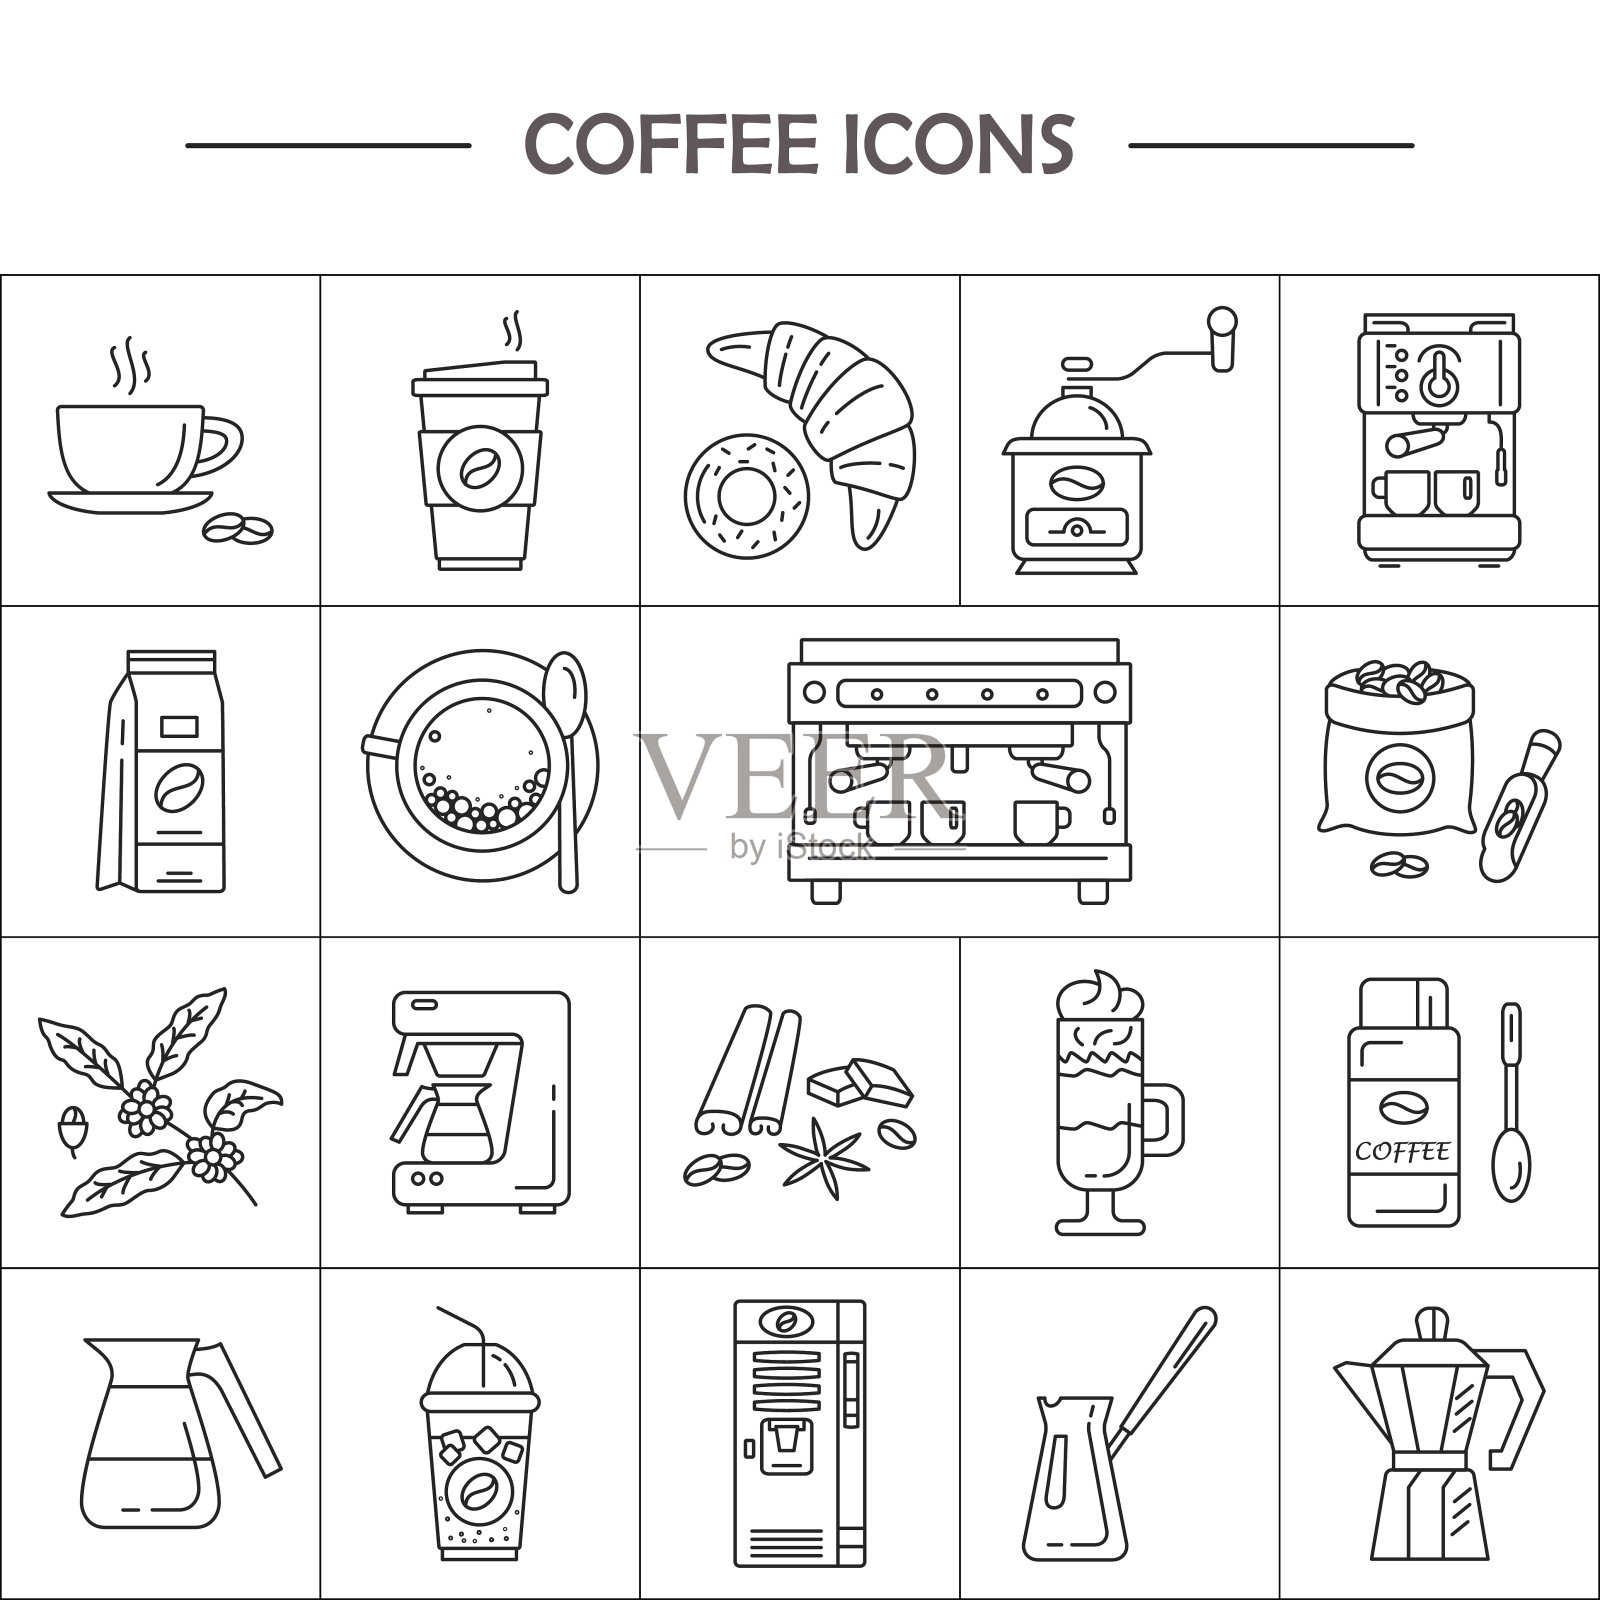 咖啡制作设备的矢量线图标。咖啡用具图标素材